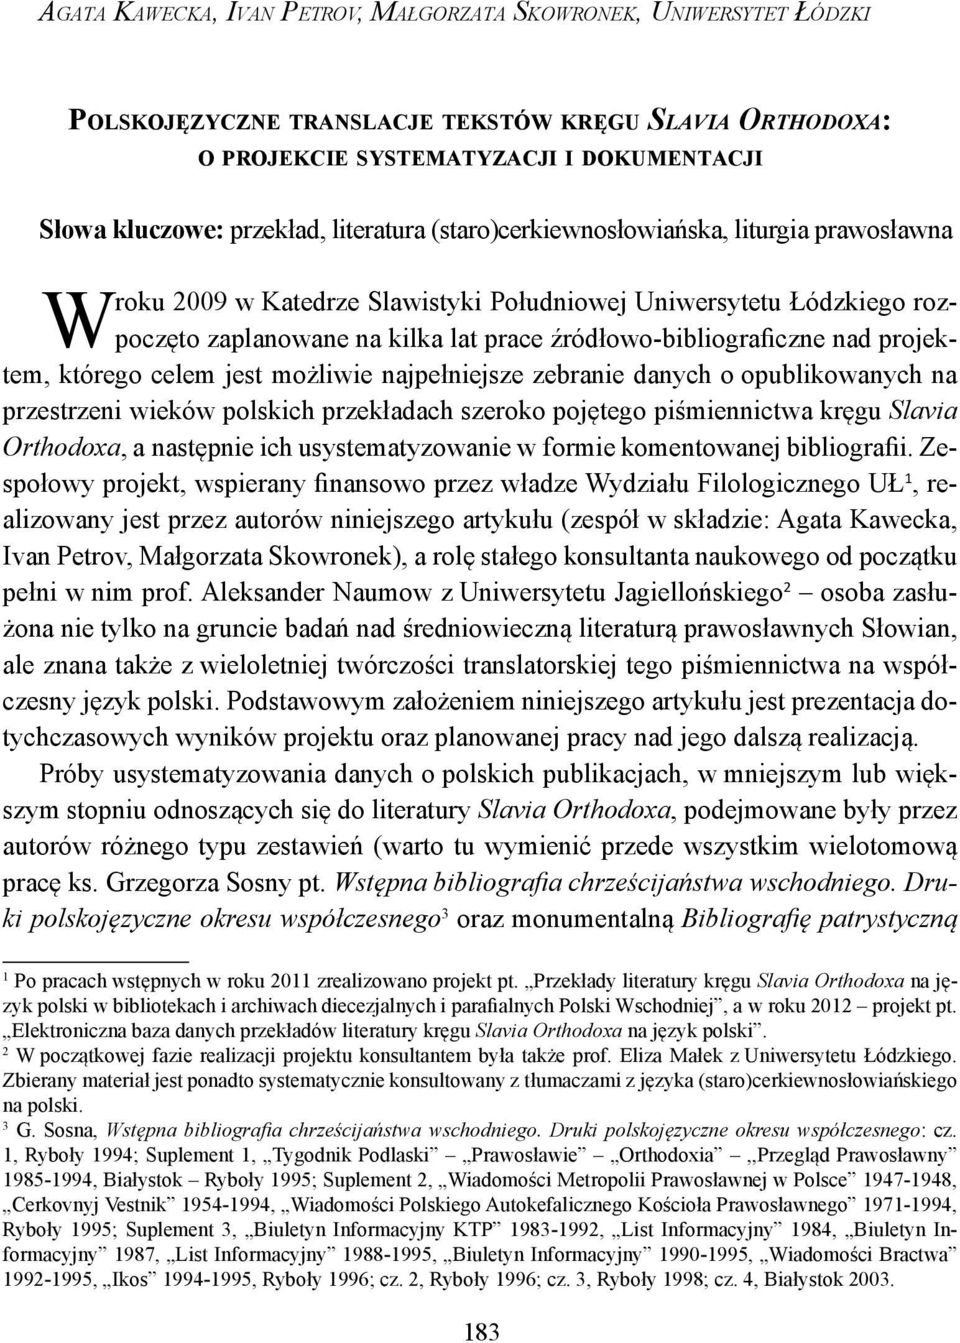 lat prace źródłowo-bibliograficzne nad projek- W tem, którego celem jest możliwie najpełniejsze zebranie danych o opublikowanych na przestrzeni wieków polskich przekładach szeroko pojętego